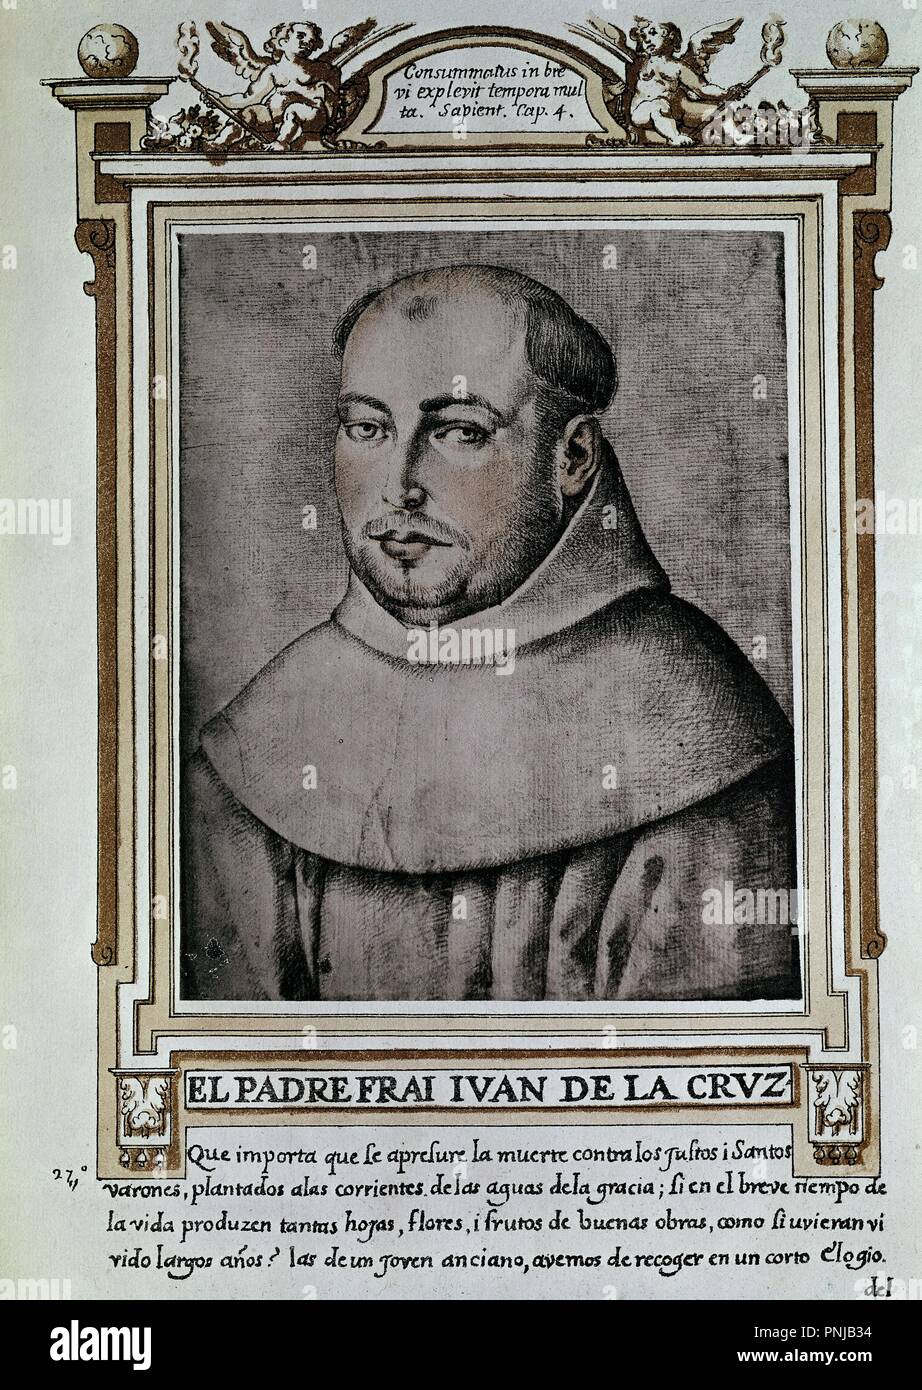 FRAY JUAN DE LA CRUZ (1542/1591) - LIBRO DE RETRATOS DE ILUSTRES Y MEMORABLES VARONES - 1599. Location: BIBLIOTECA NACIONAL-COLECCION. MADRID. Stock Photo